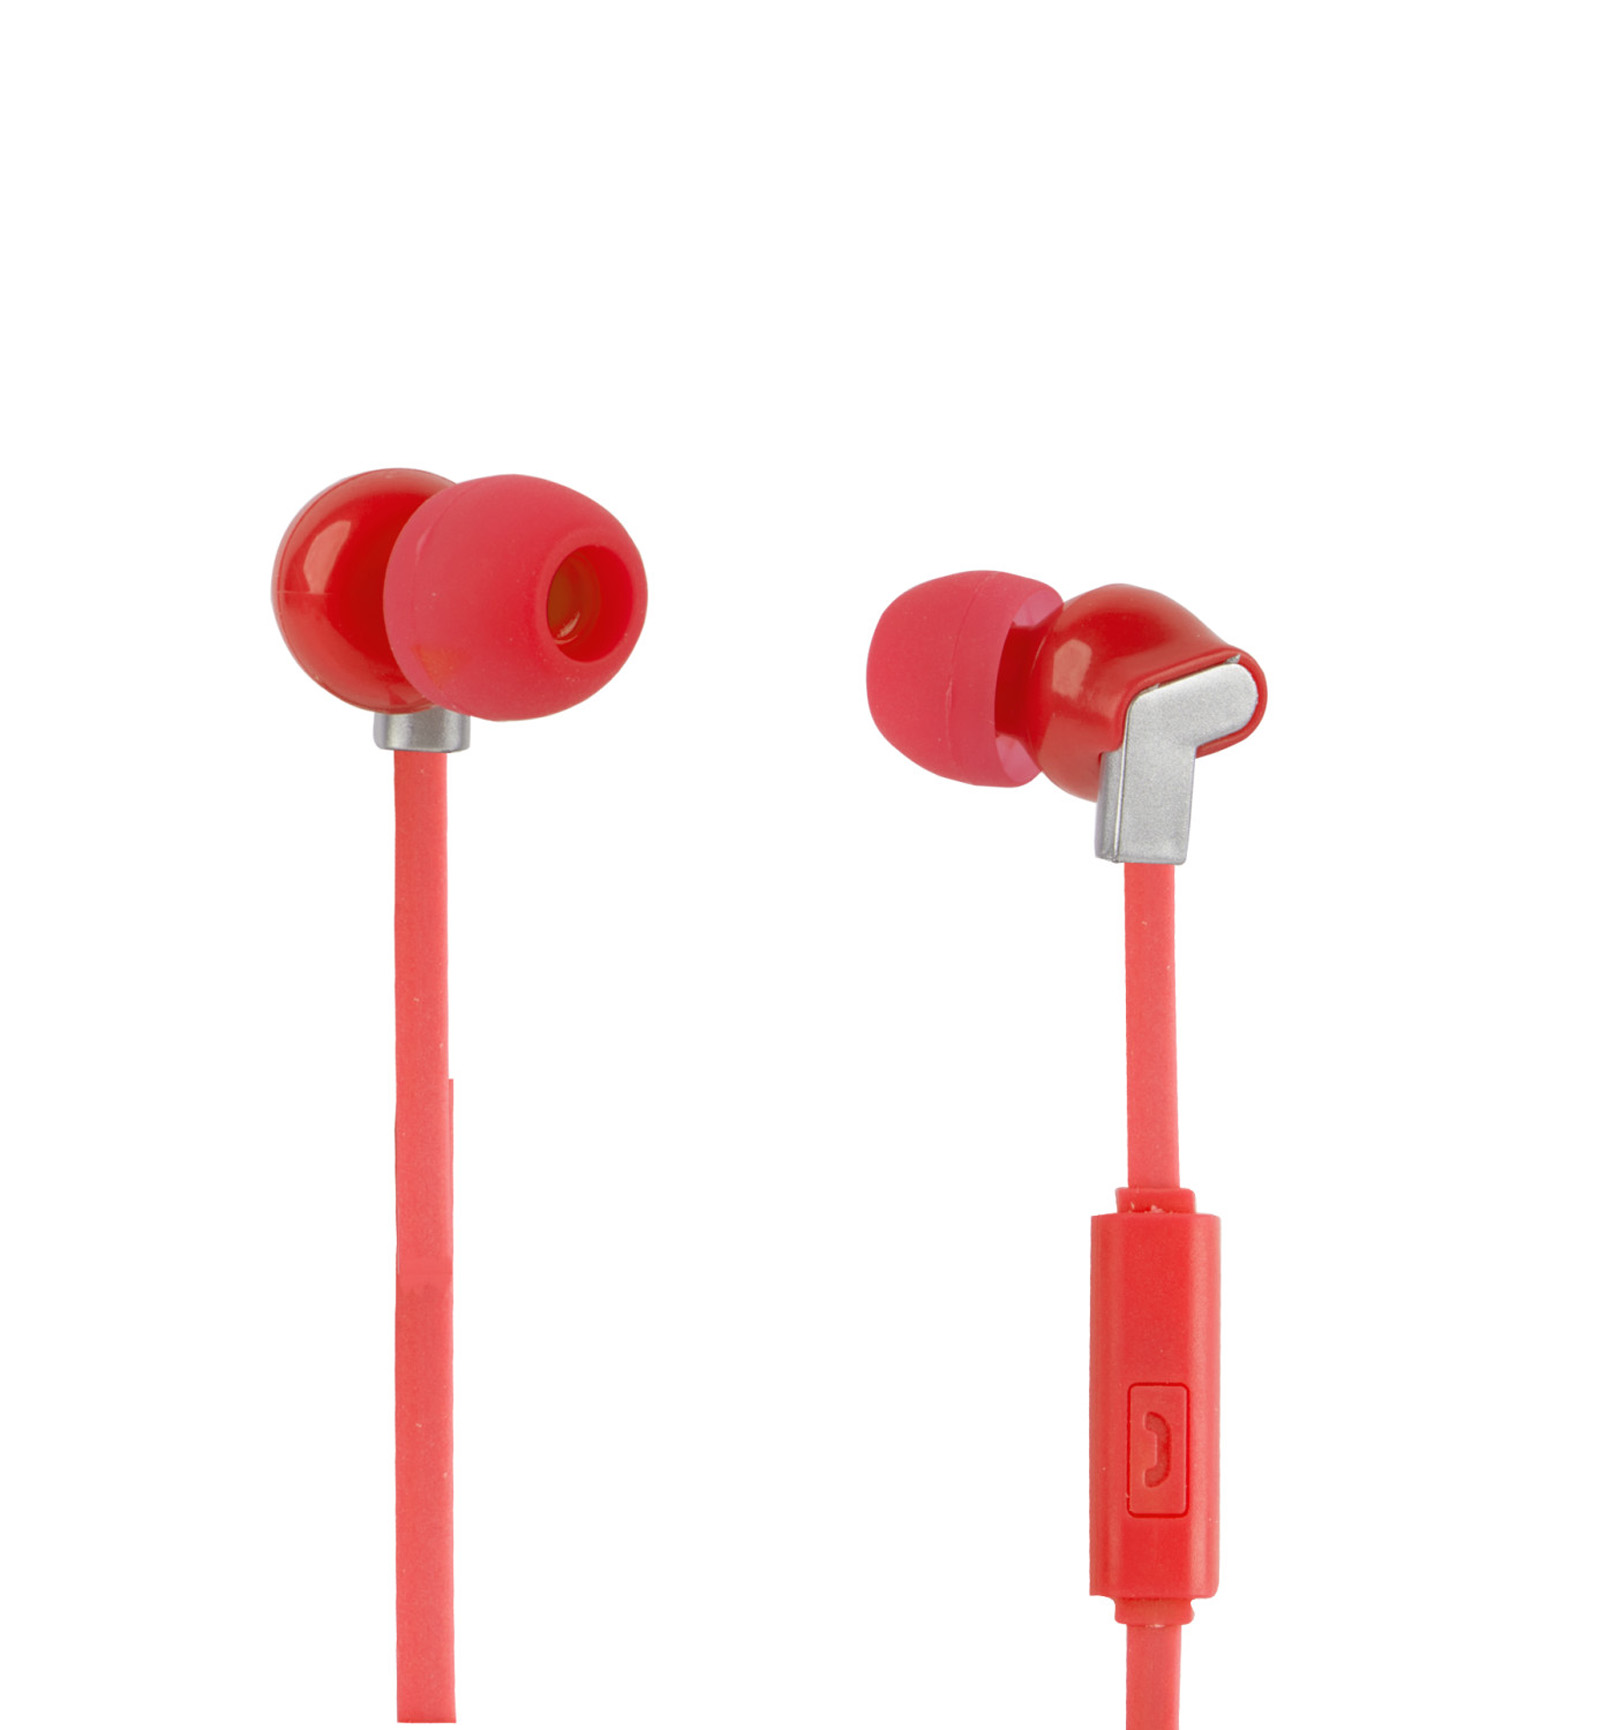 Vivitar VCB40011-RED-KM Chrome Earbuds - Bright Red